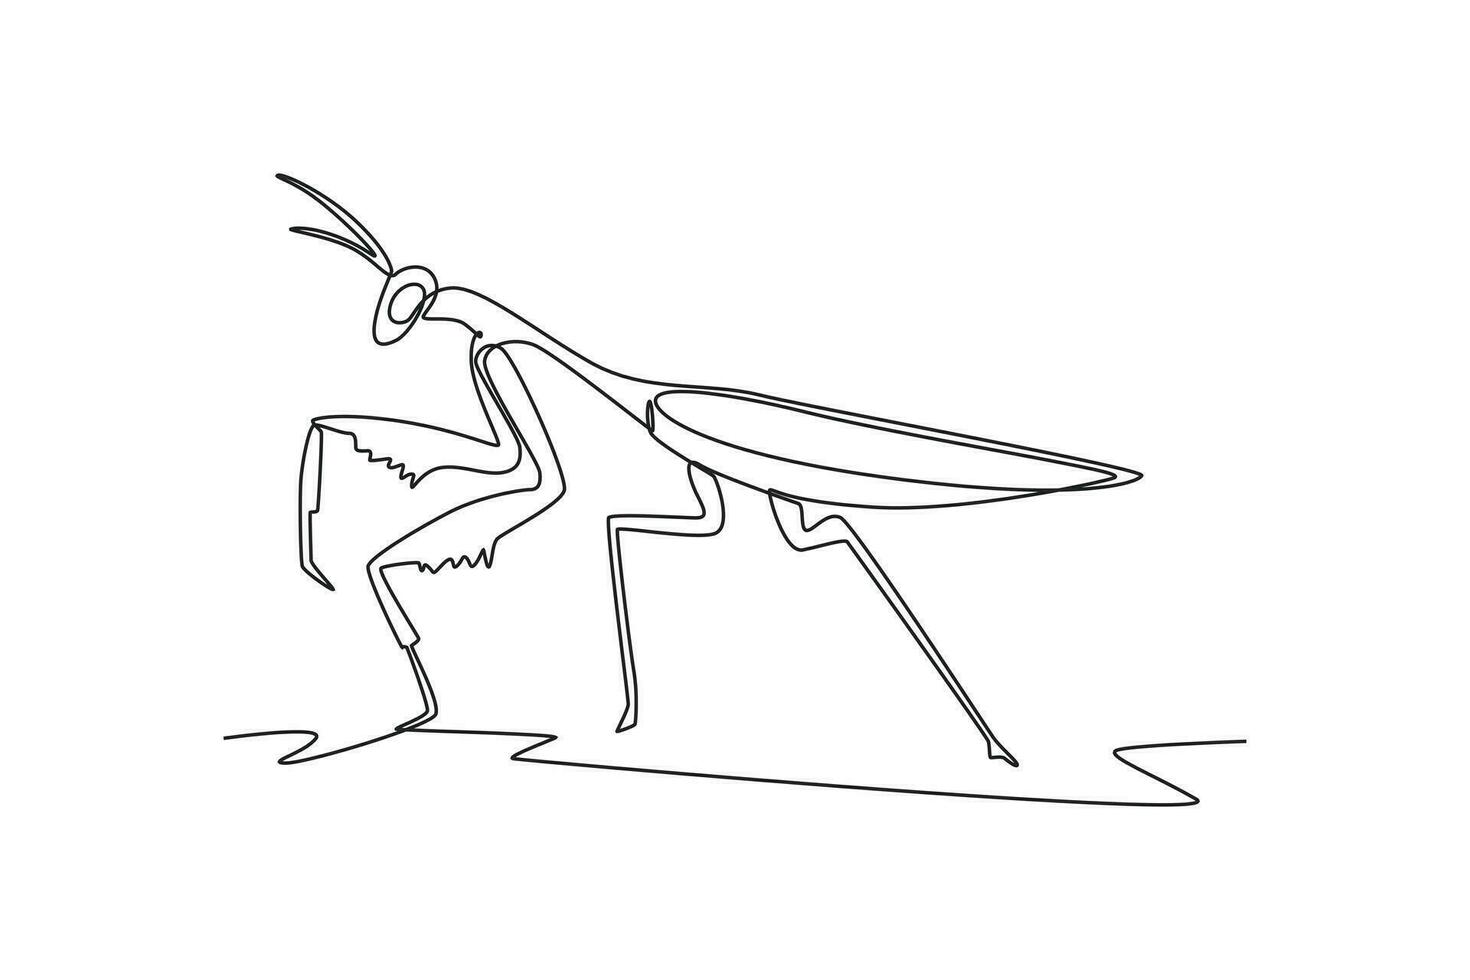 contínuo 1 linha desenhando insetos conceito. solteiro linha desenhar Projeto vetor gráfico ilustração.